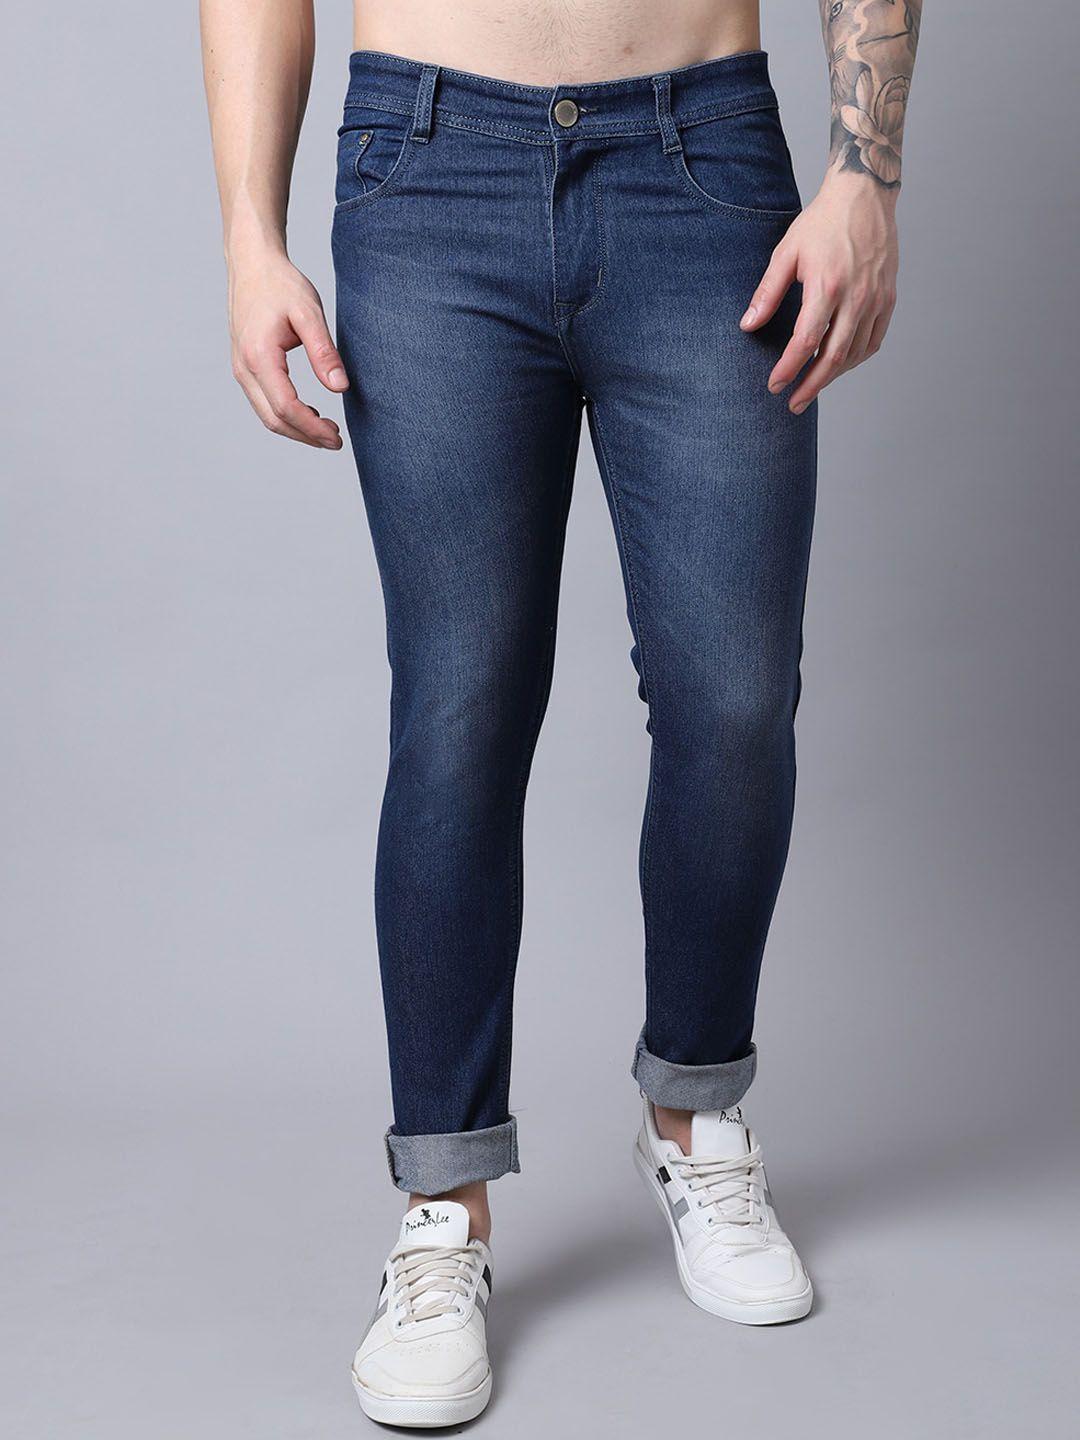 provogue-men-mid-rise-light-fade-cotton-jeans